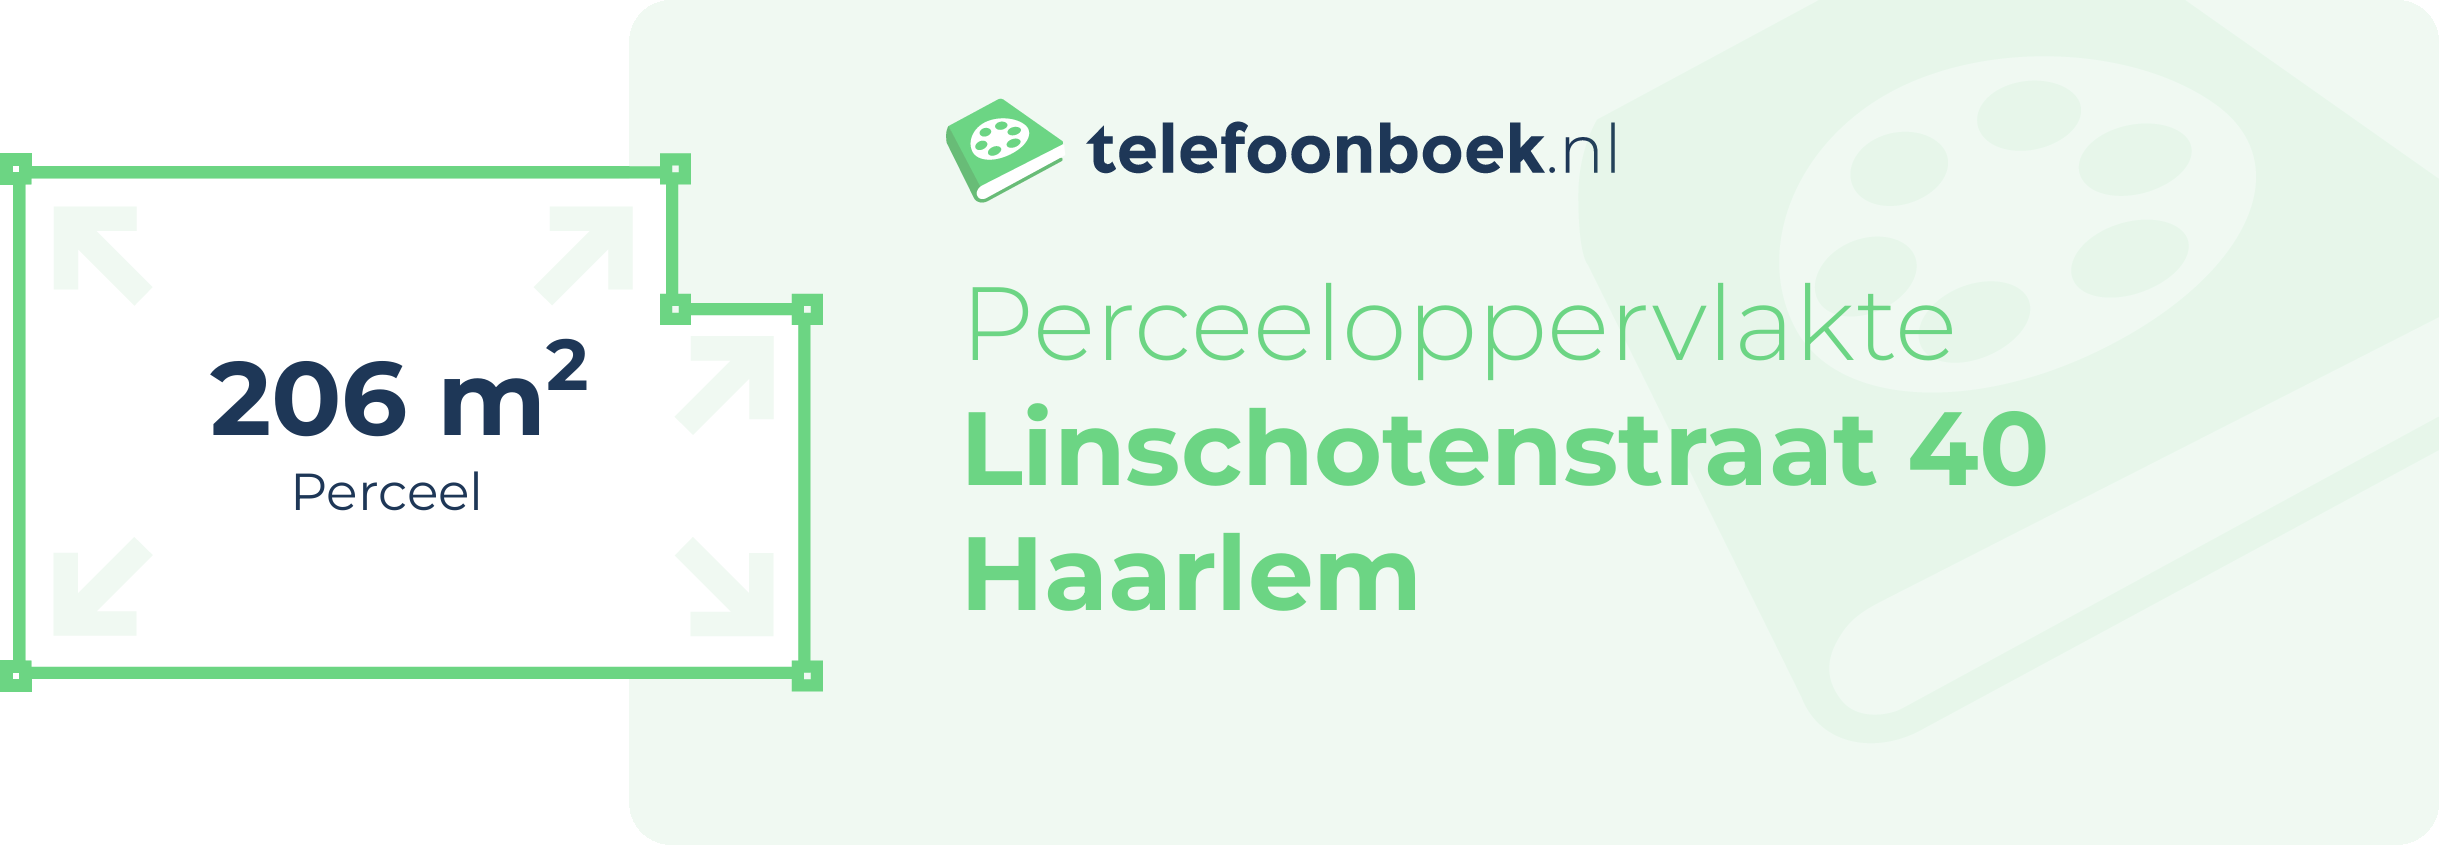 Perceeloppervlakte Linschotenstraat 40 Haarlem